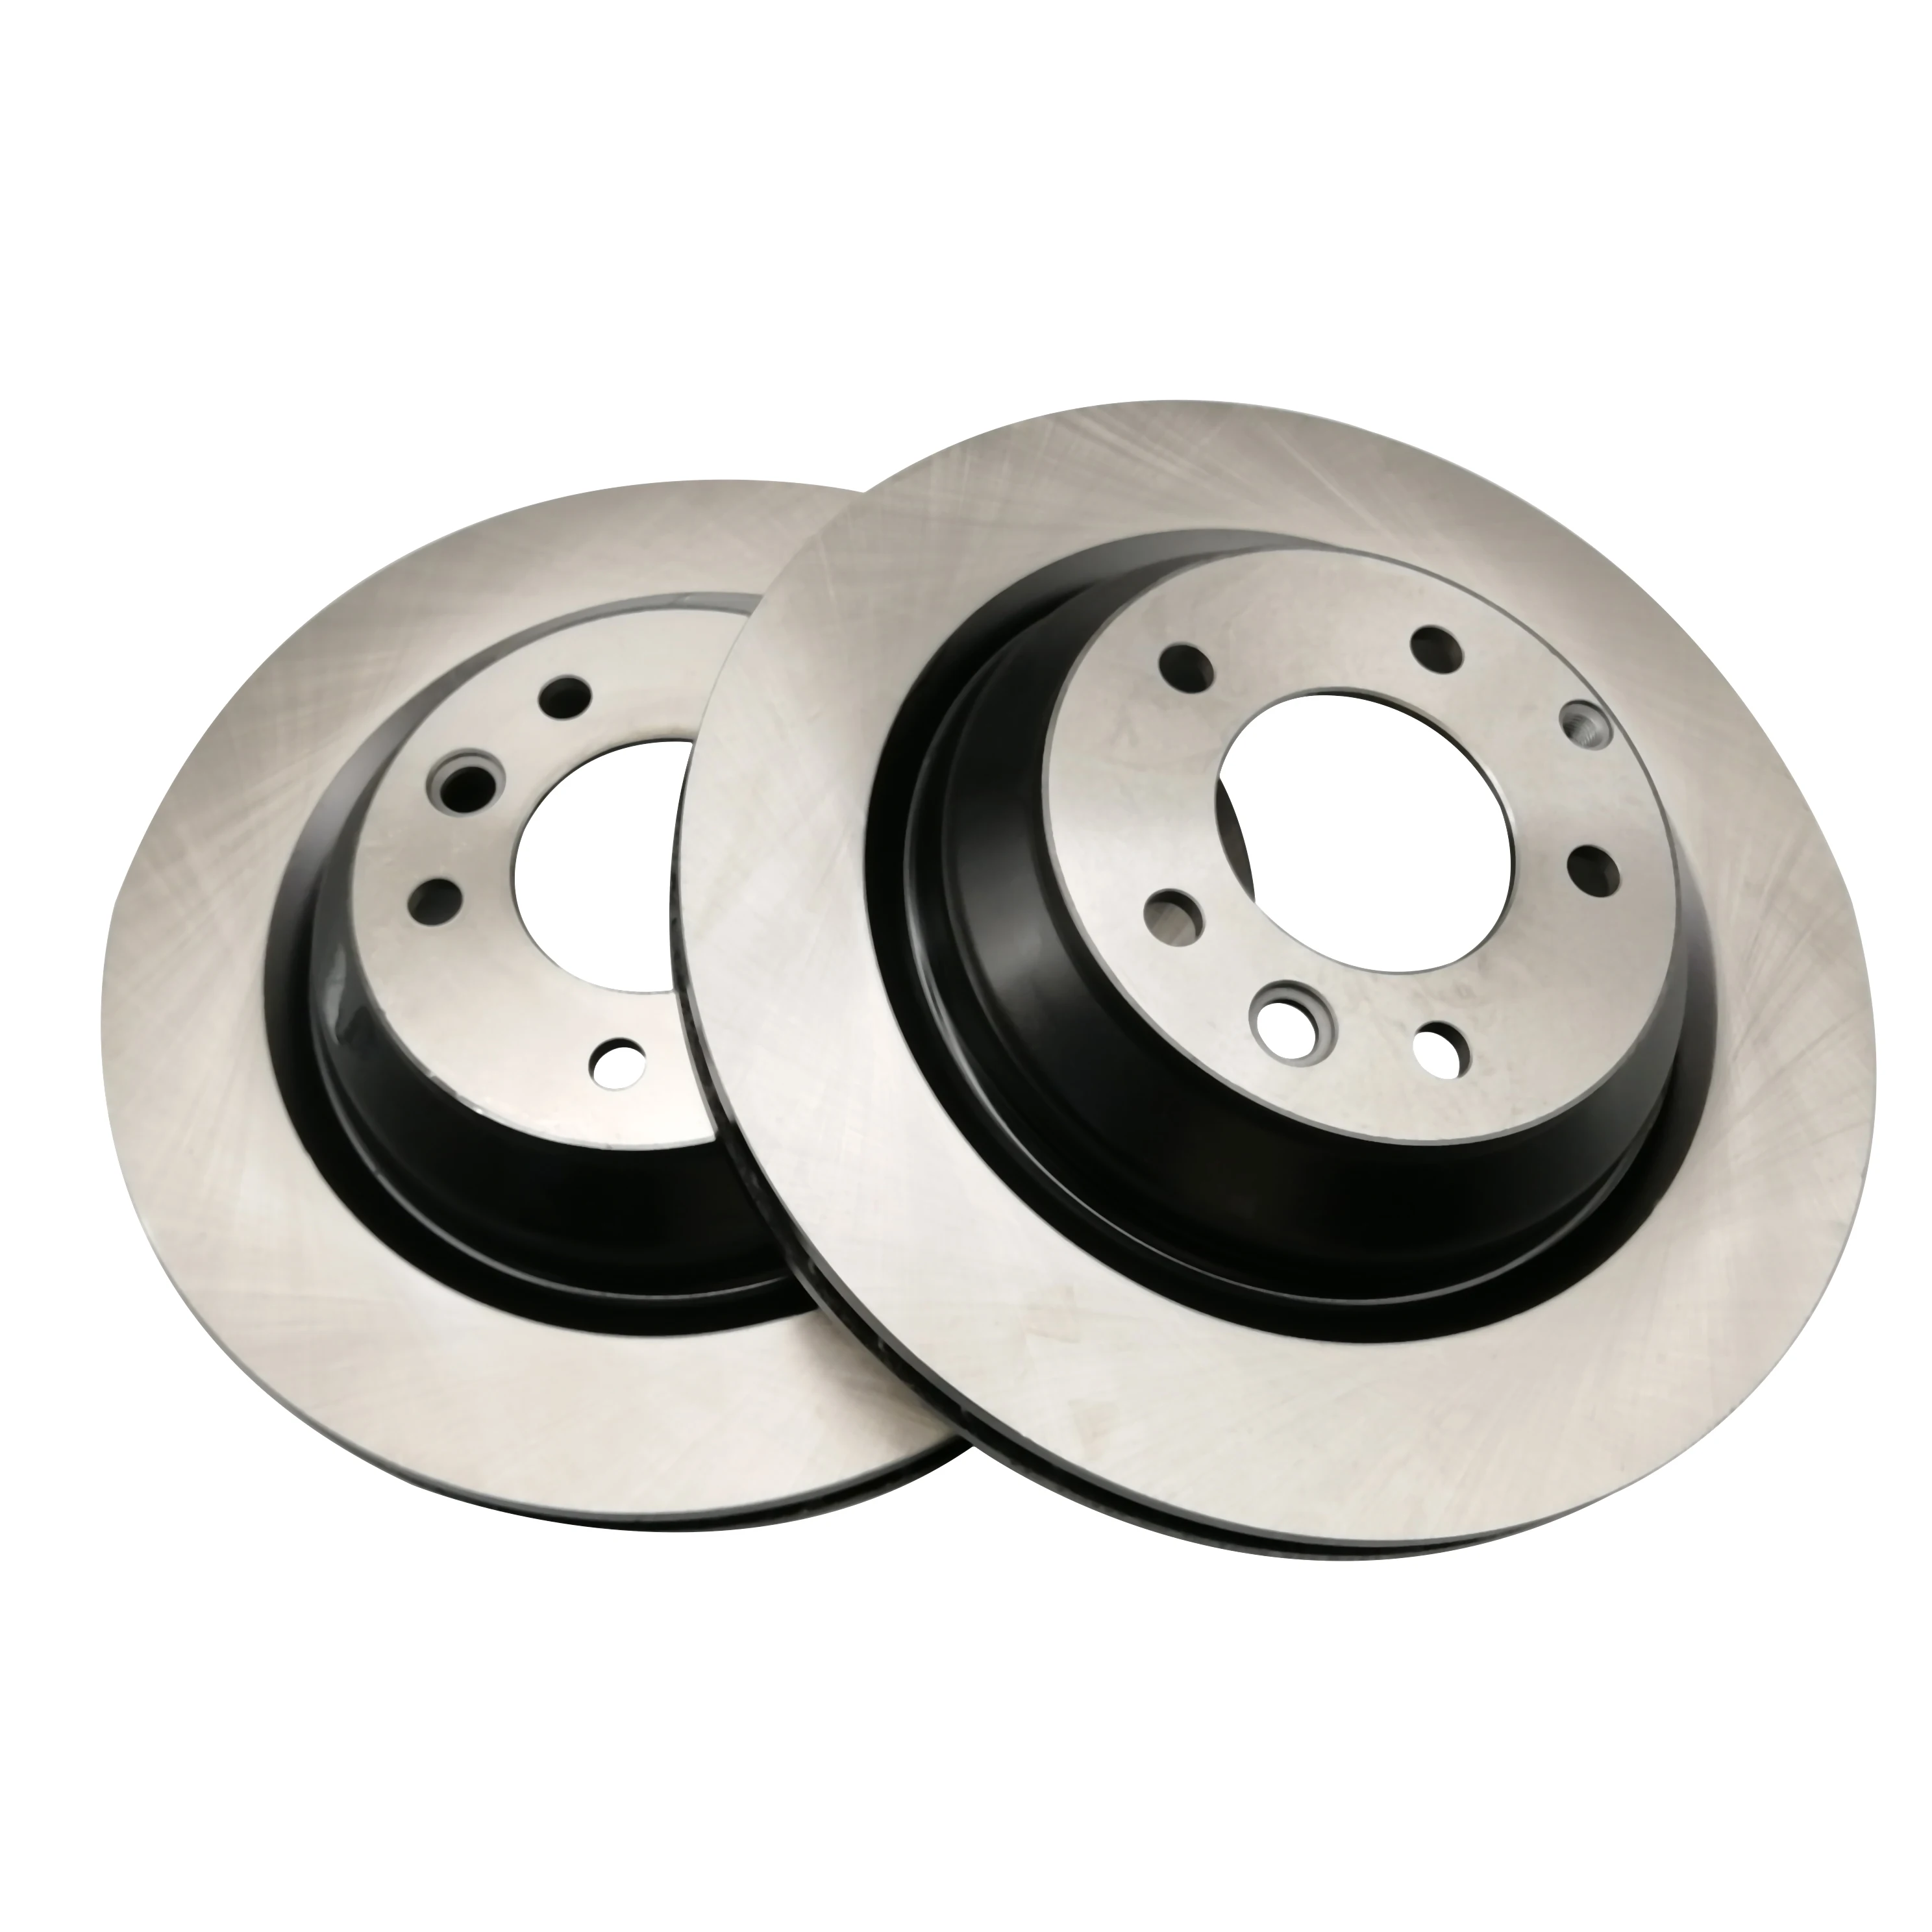 
Auto brake disc for kia brake disk rotor 